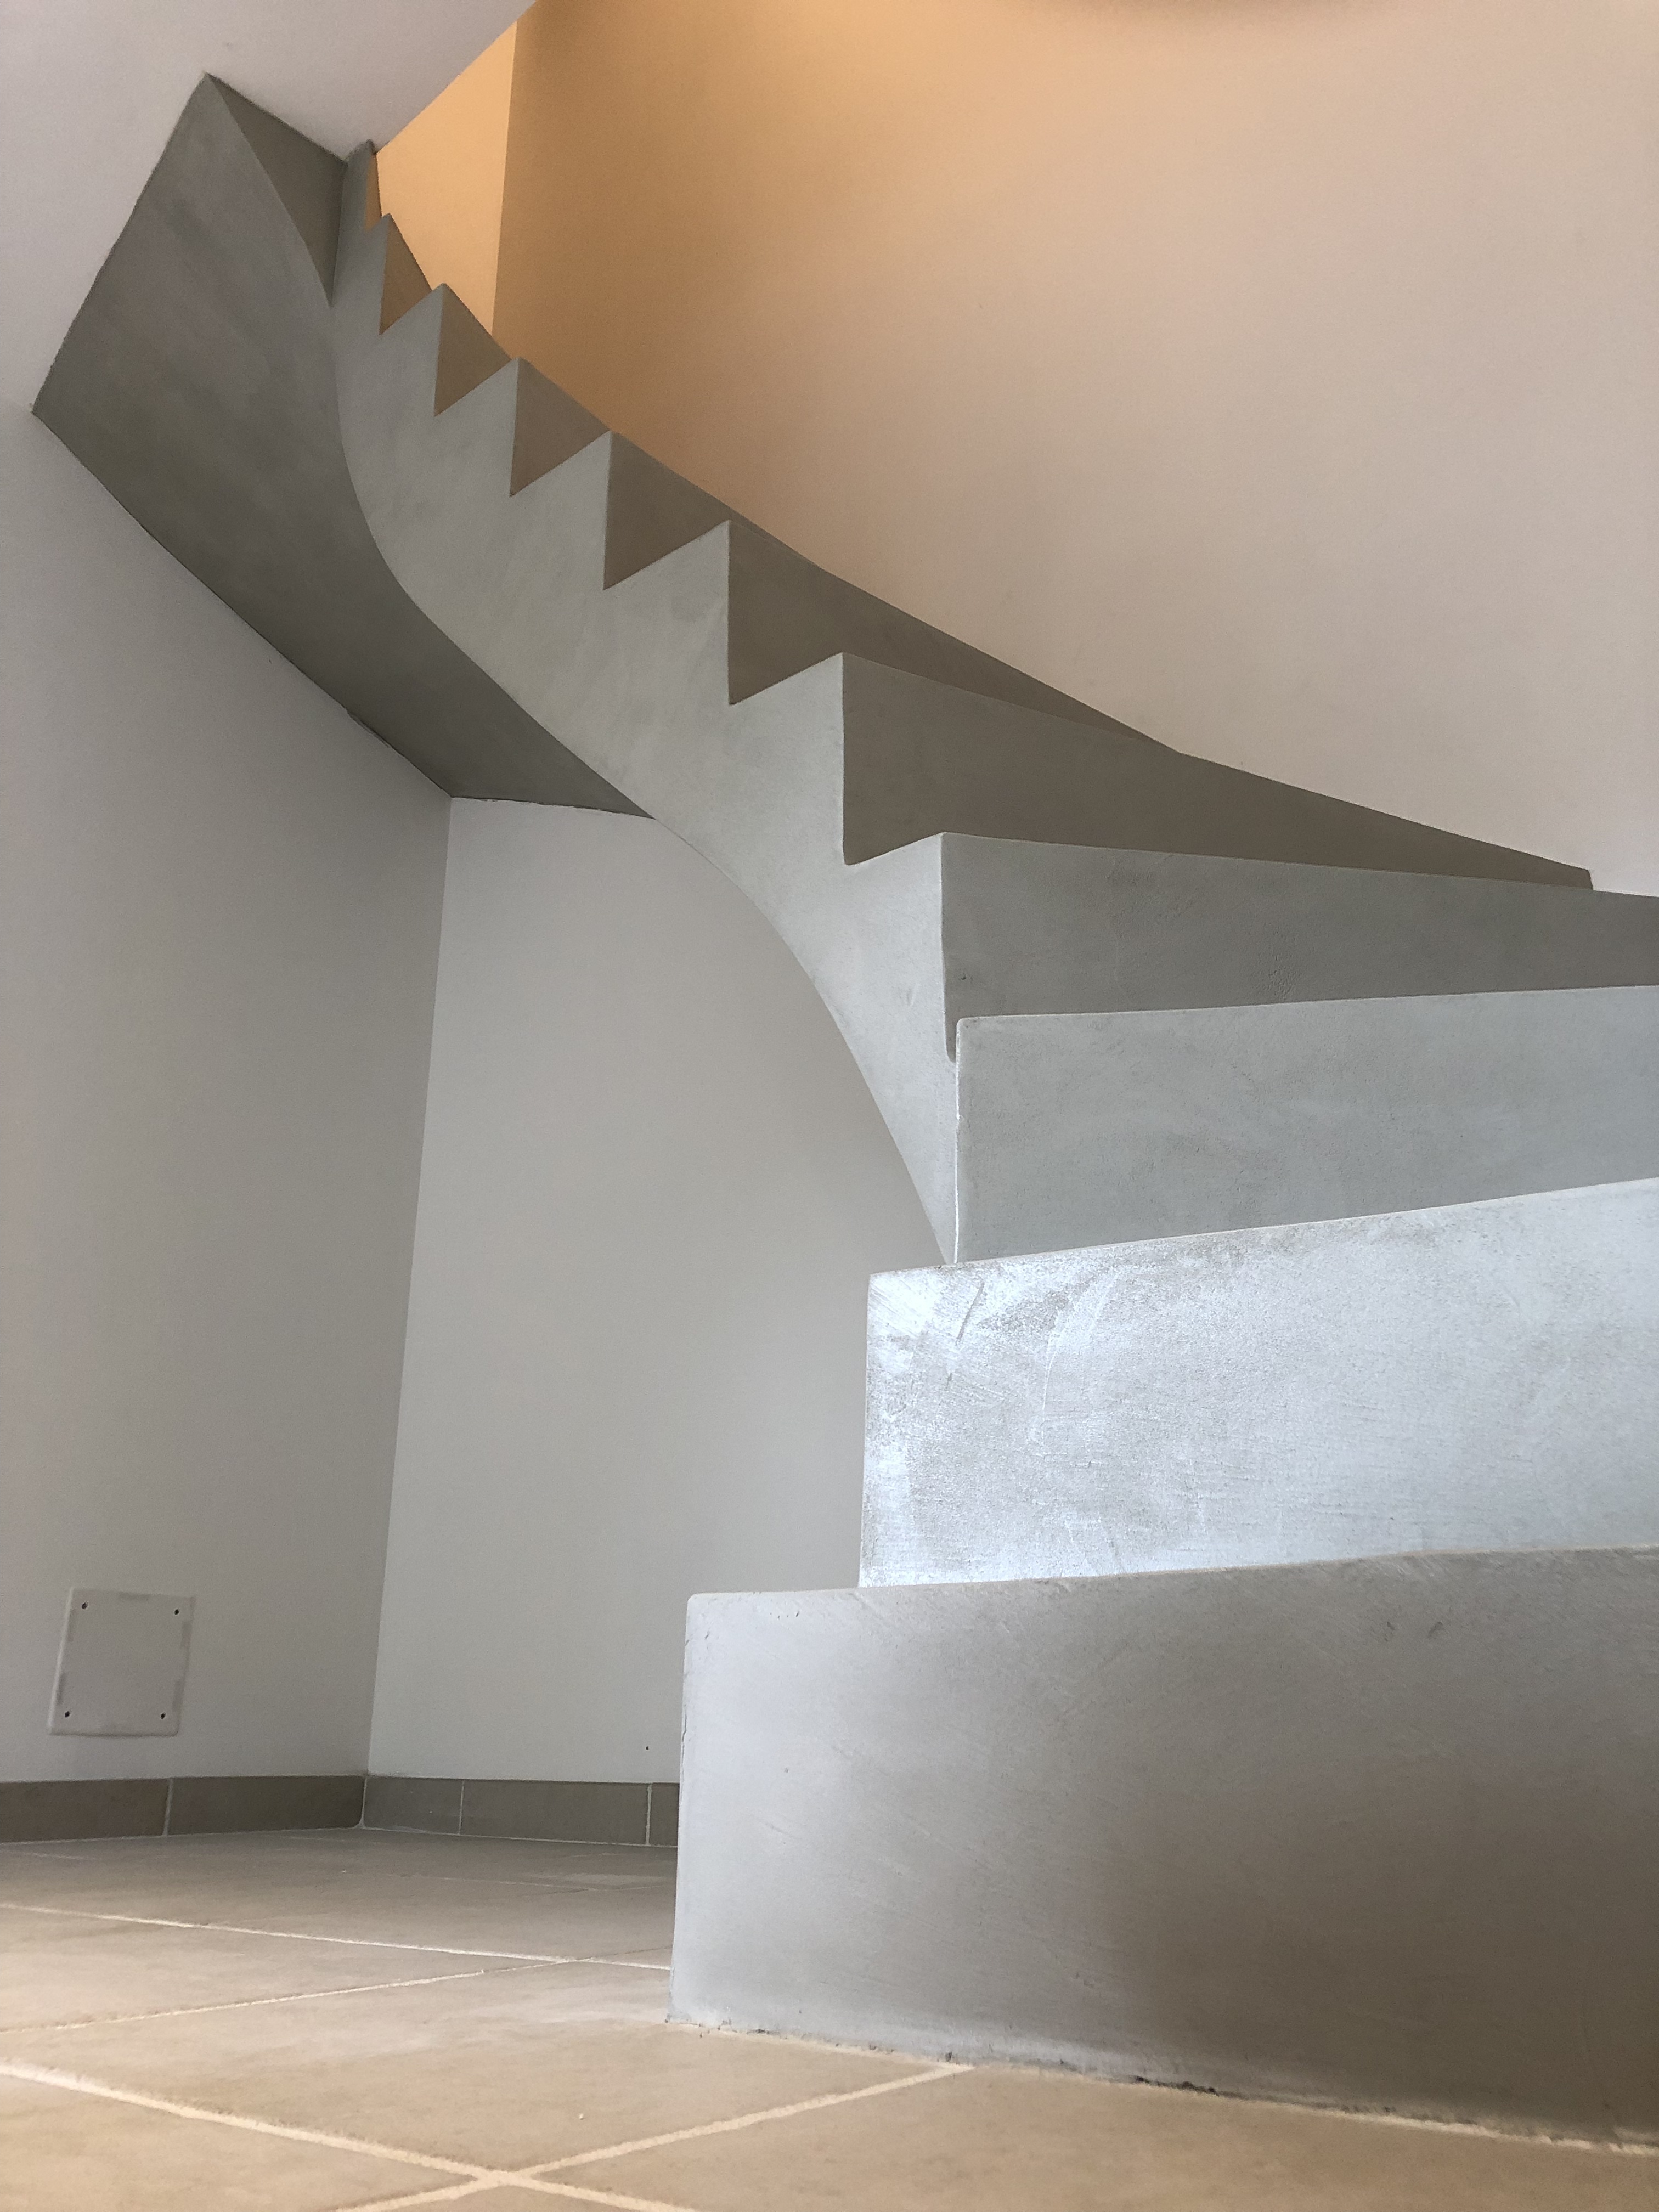 audacieux escalier à paillasse deux quart tournant en béton ciré vernis soyeux couleur gris perle à Royan en Charente maritime dans la région nouvelle aquitaine pour un particulier